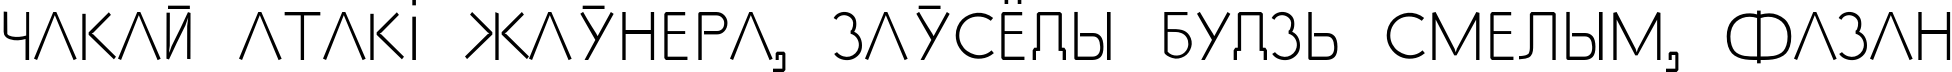 Пример написания шрифтом SS_Adec2.0_text текста на белорусском